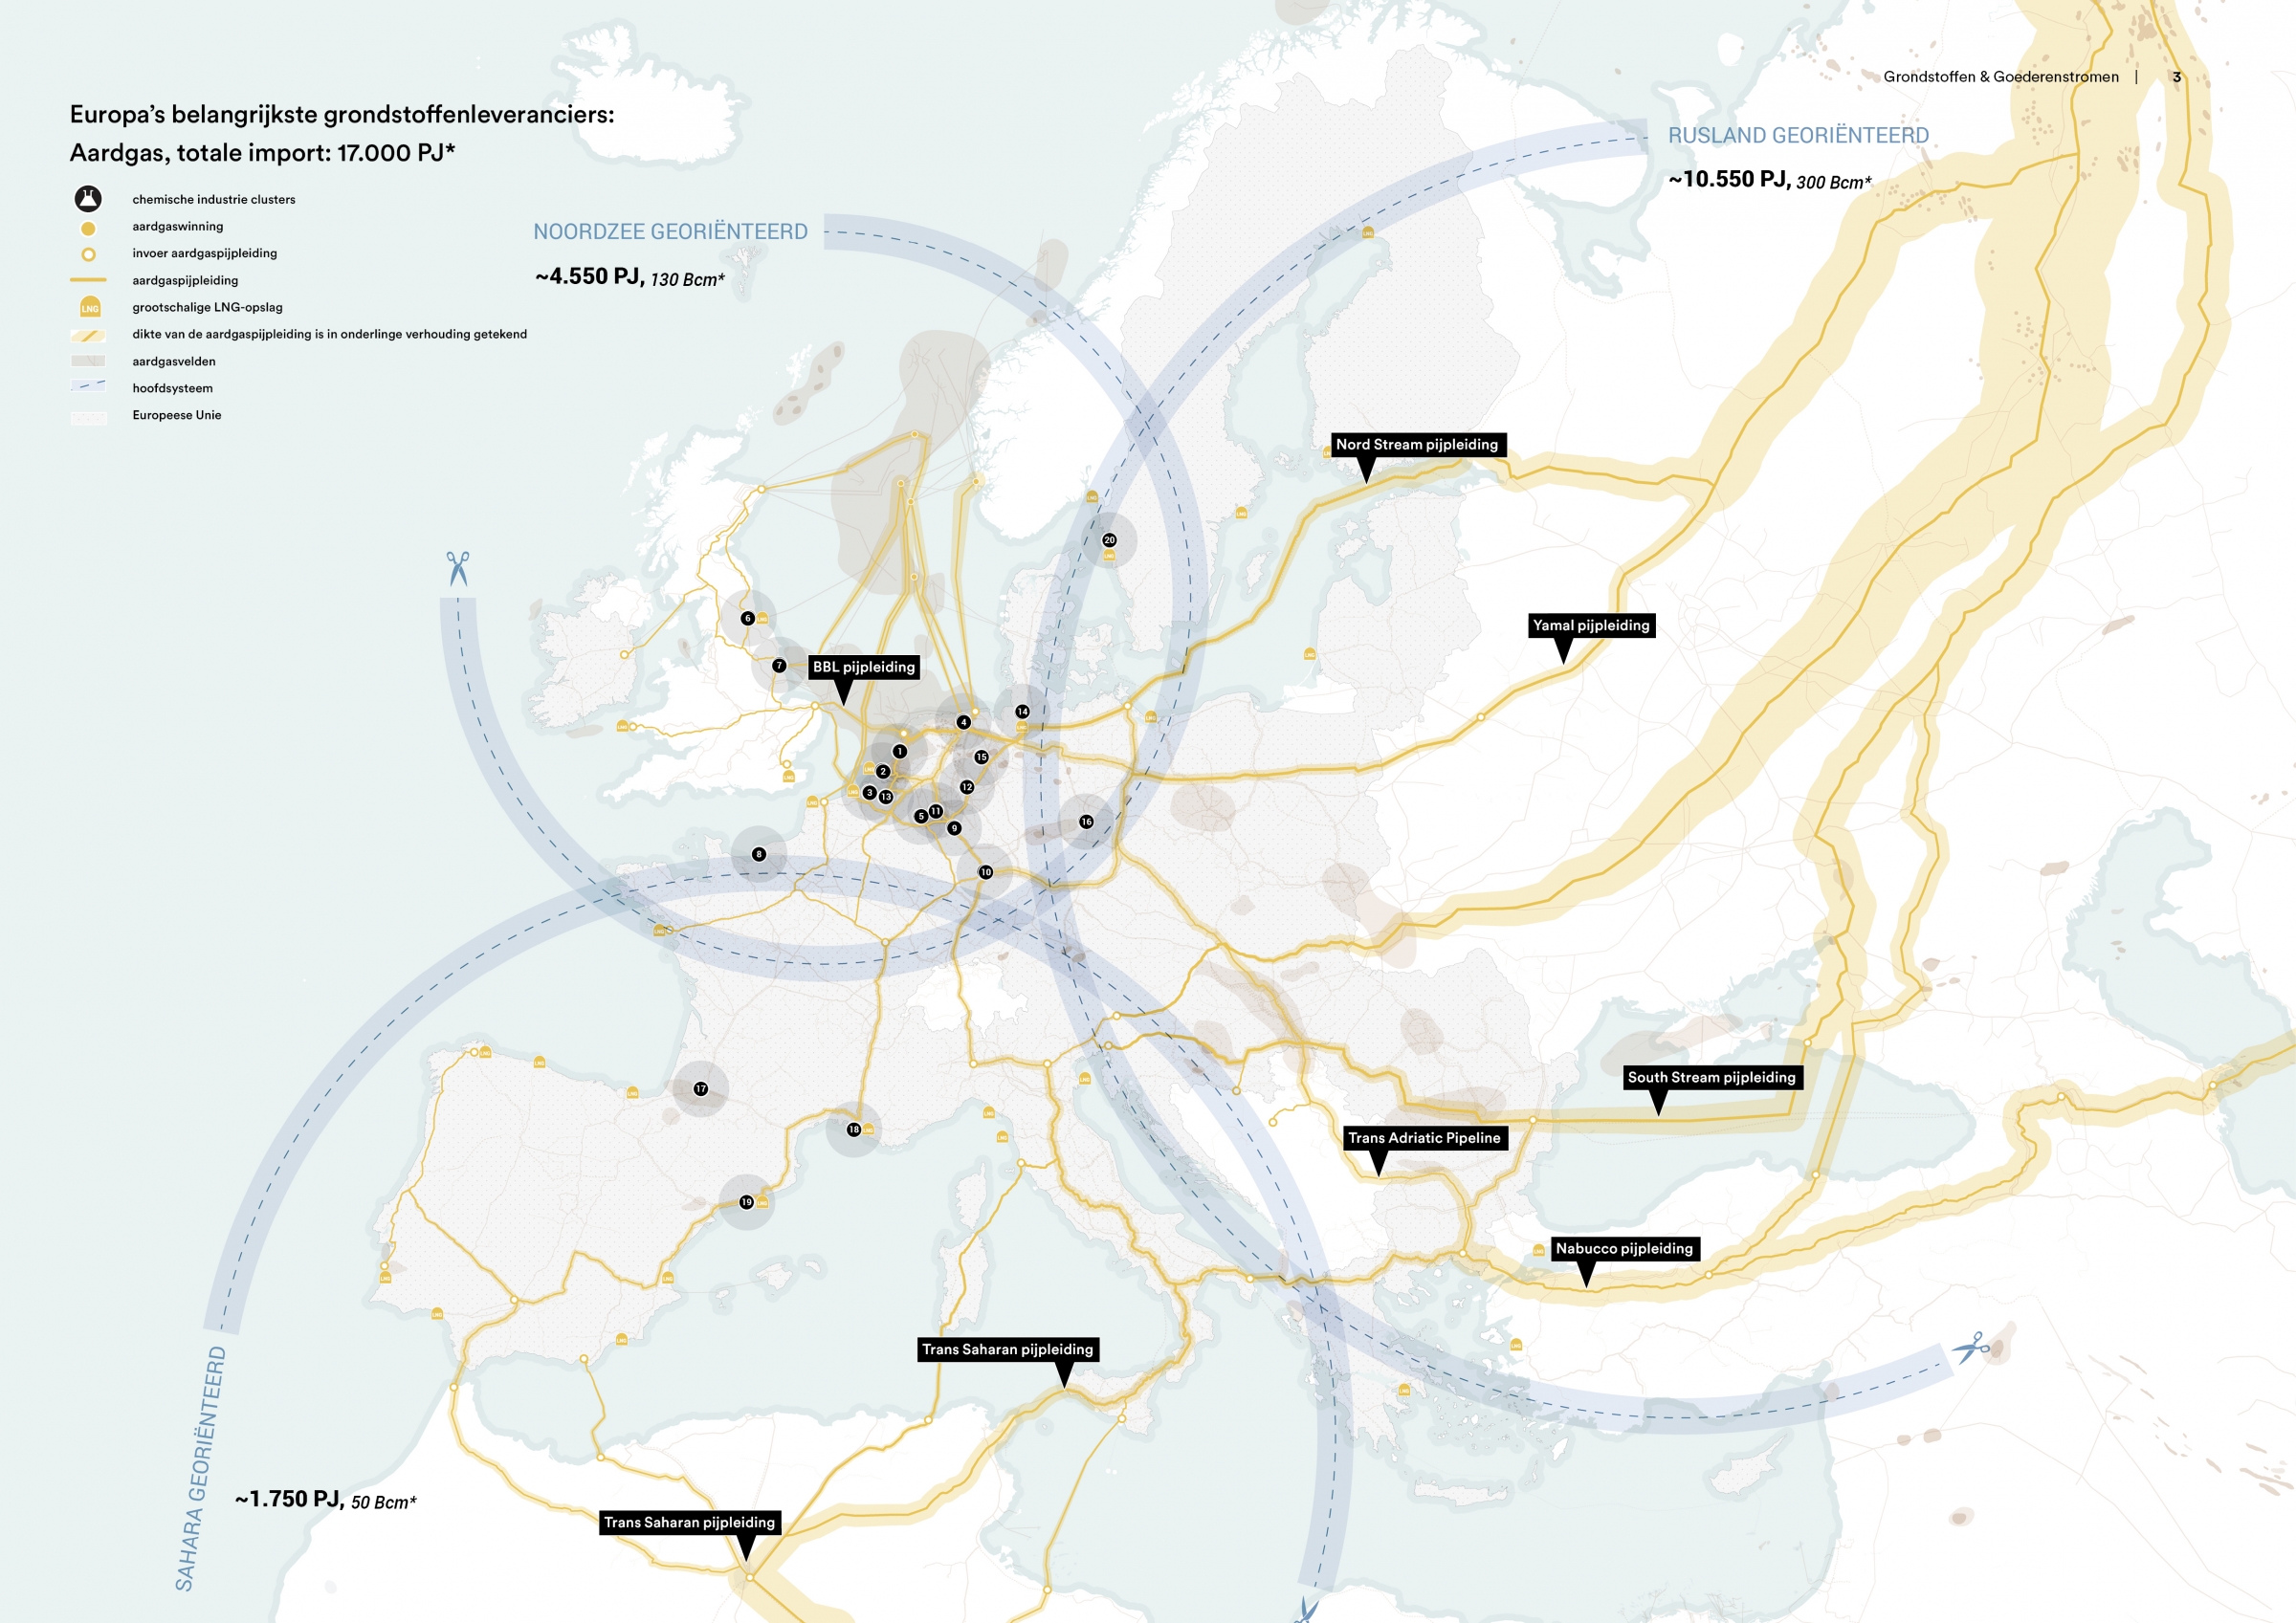 Europa’s belangrijkste grondstoffenleveranciers: het aardgasnetwerk